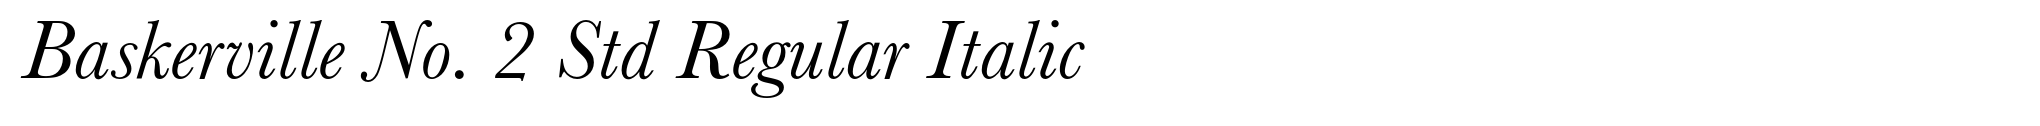 Baskerville No. 2 Std Regular Italic image